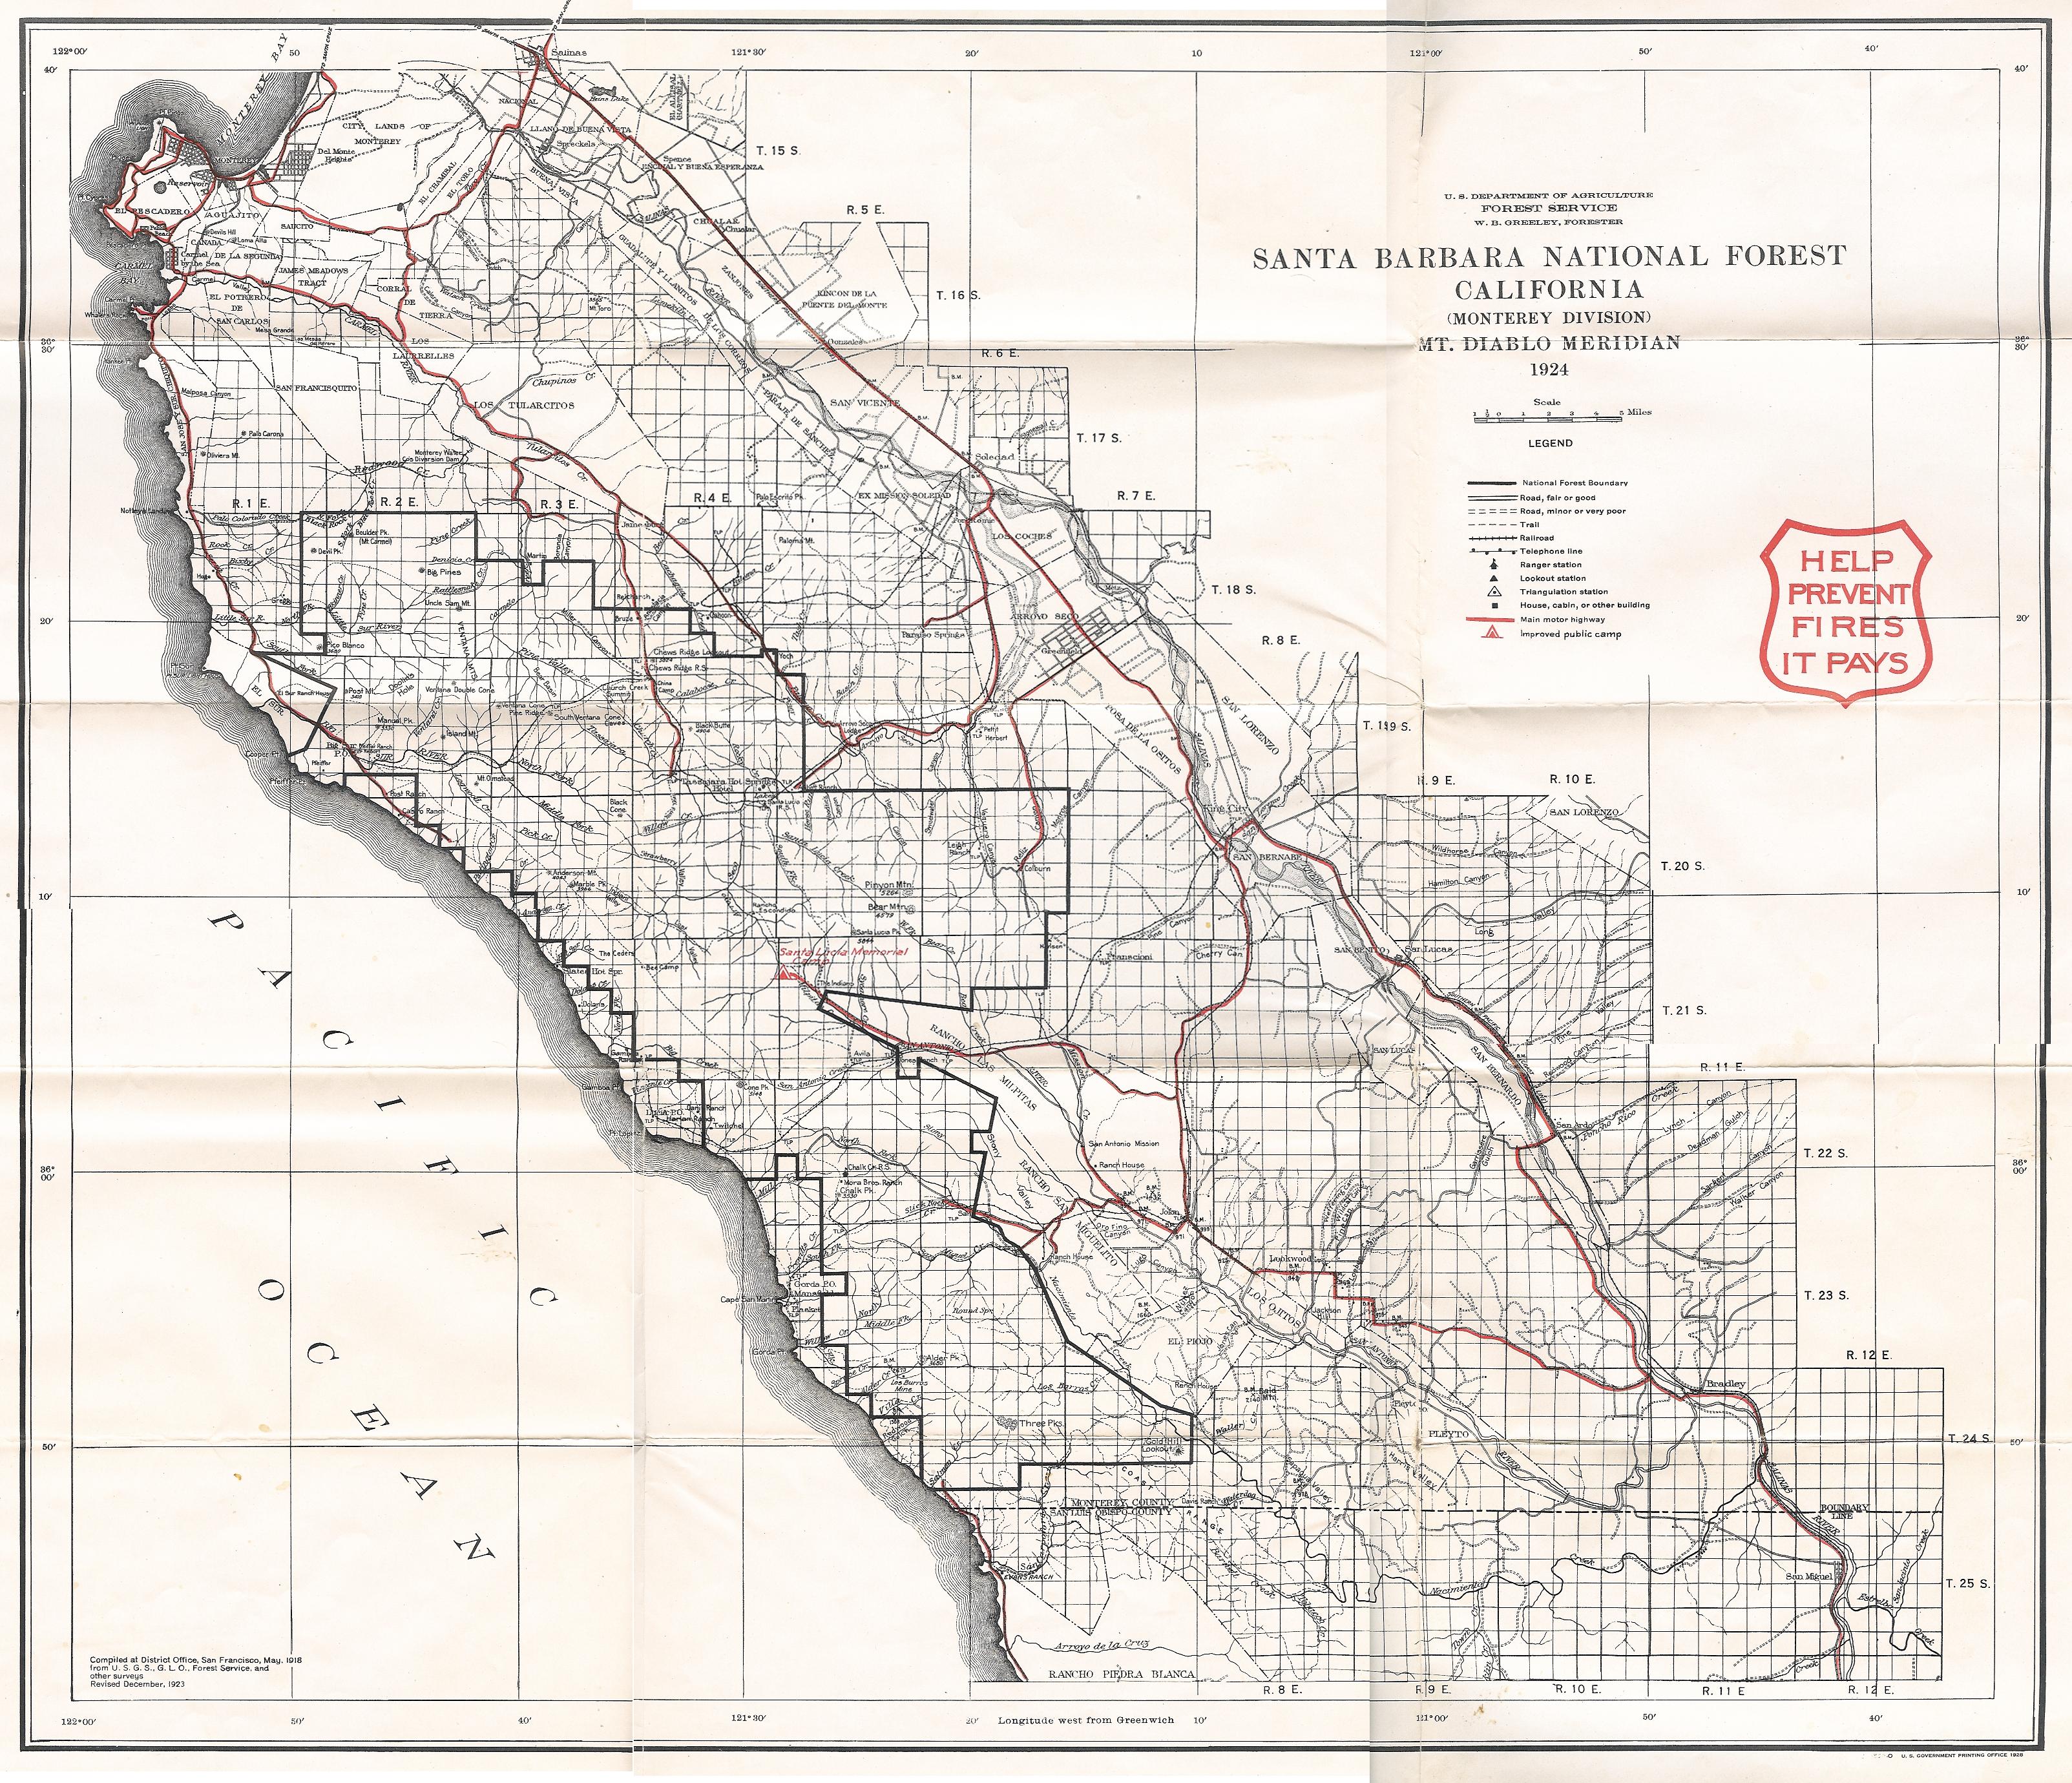 Big Sur Map